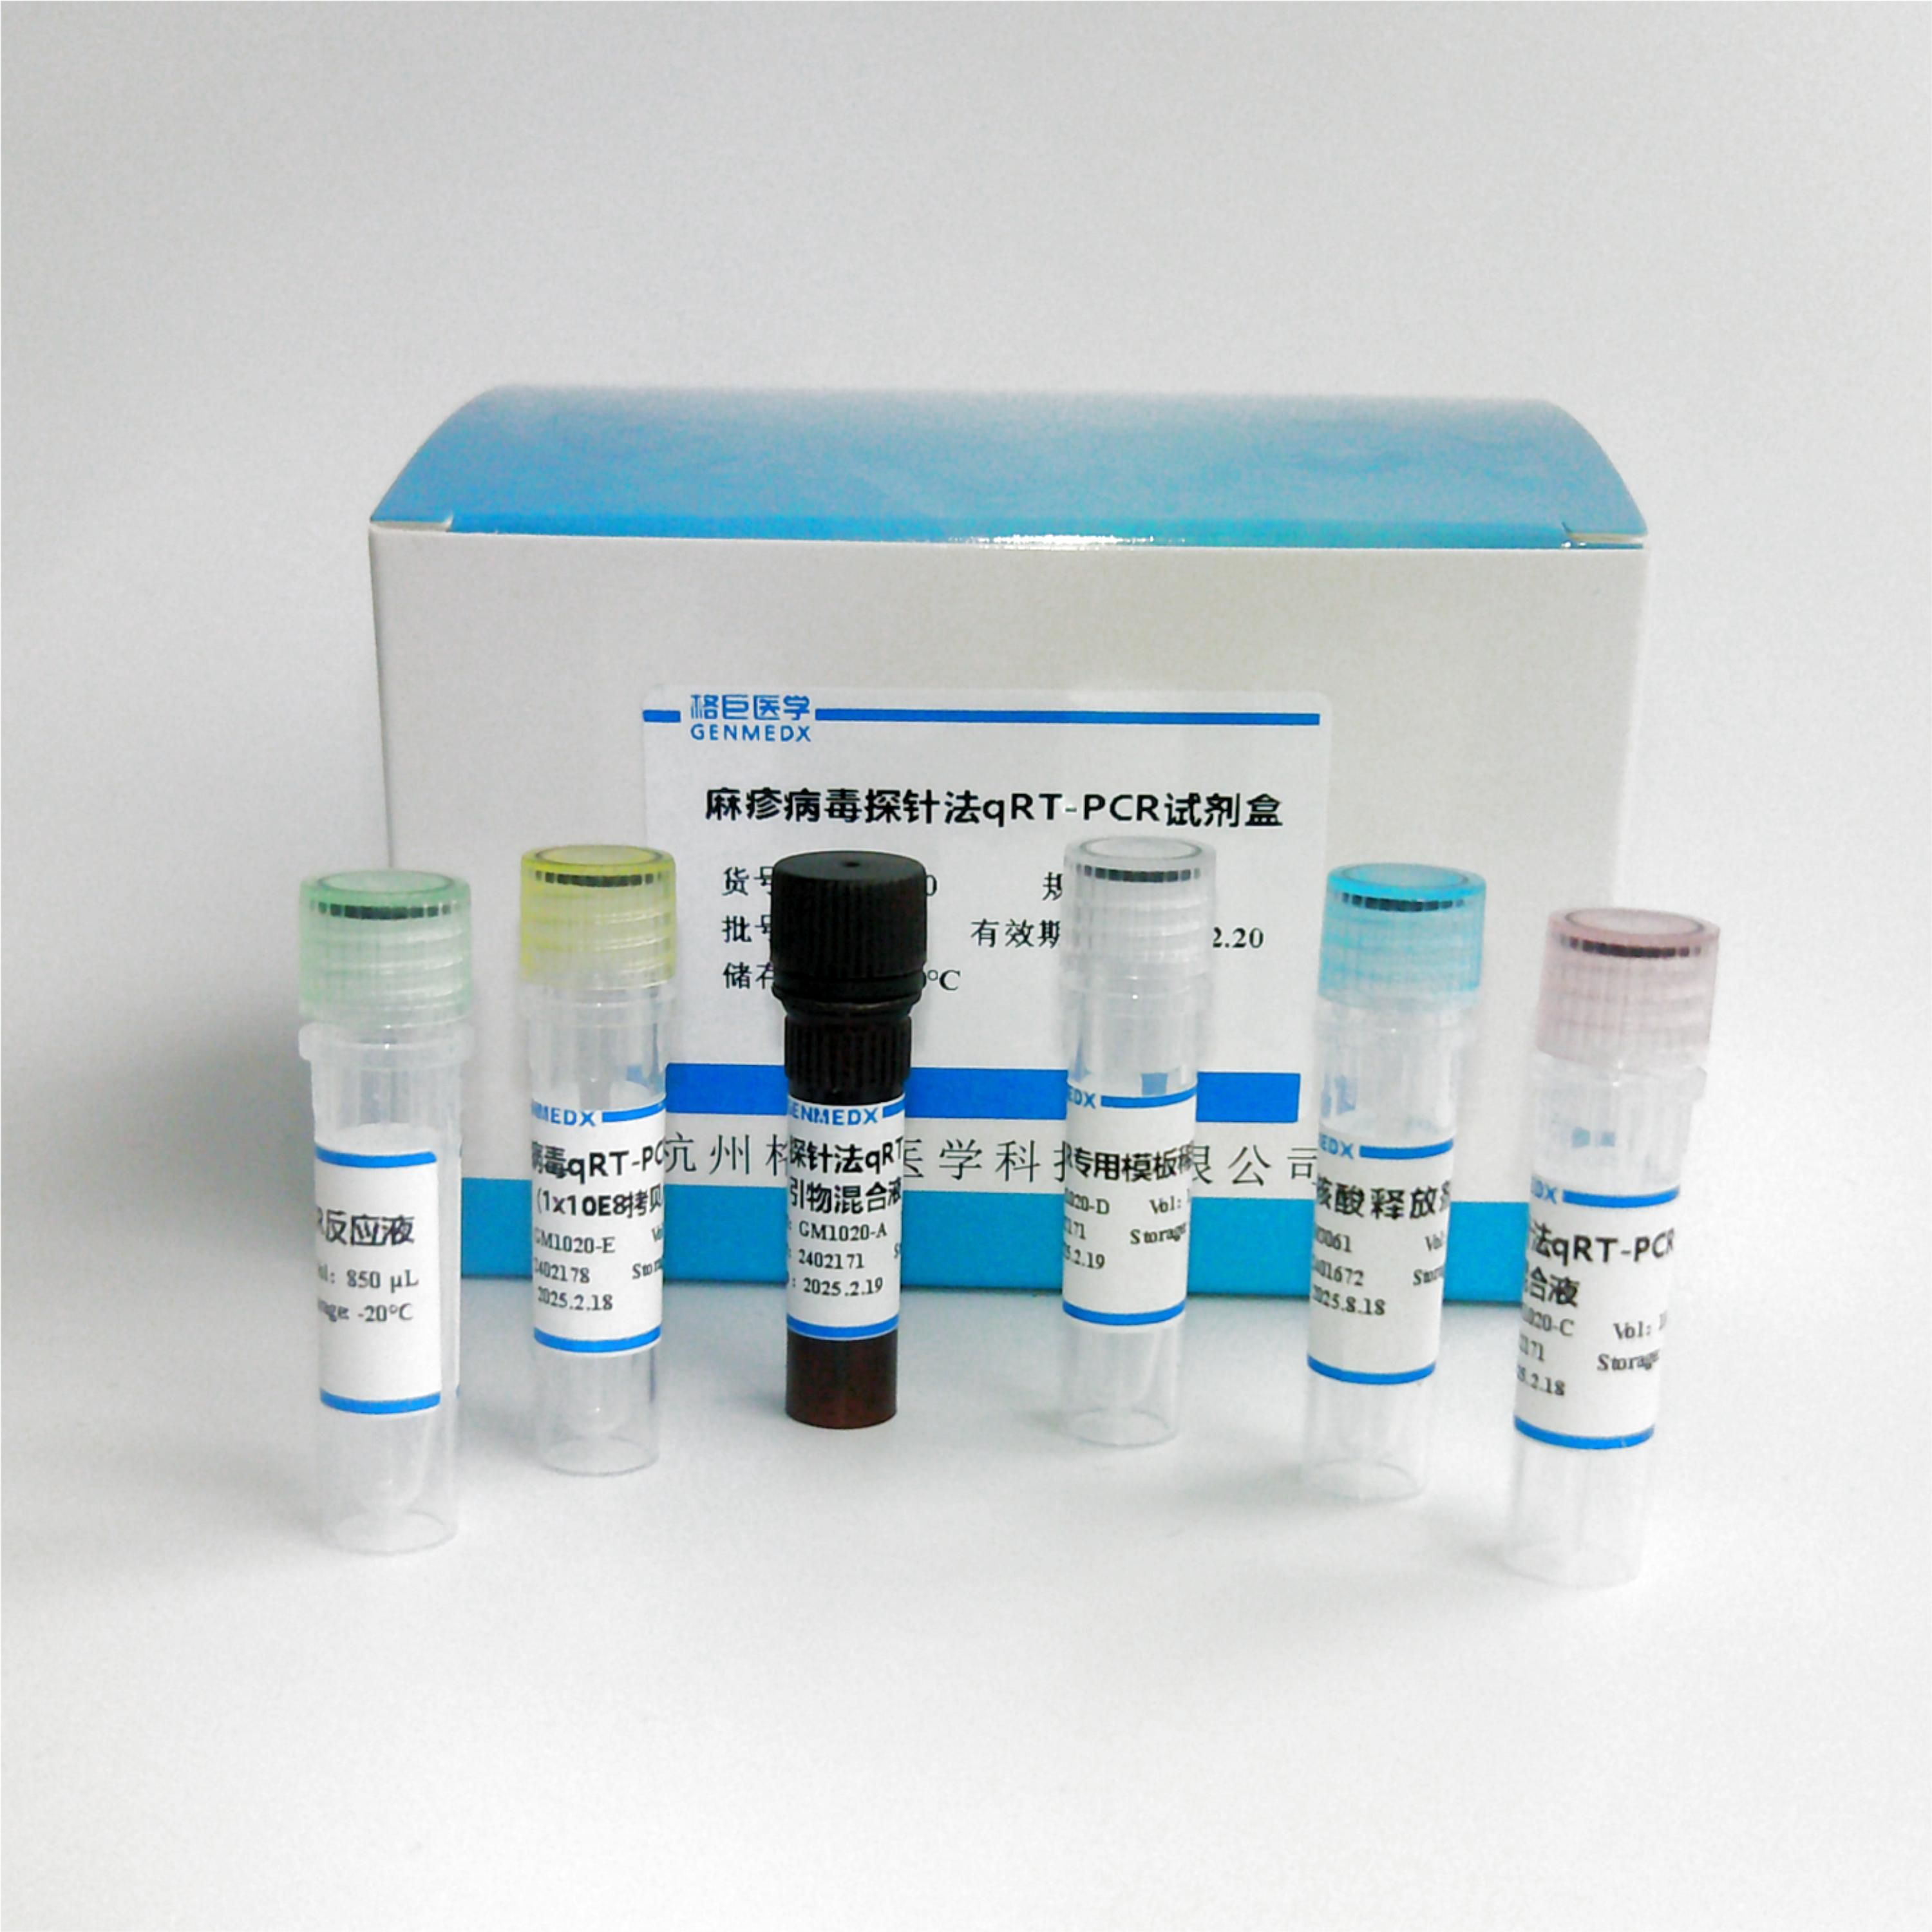 洋葱伯克霍尔德菌染料法荧光定量PCR试剂盒